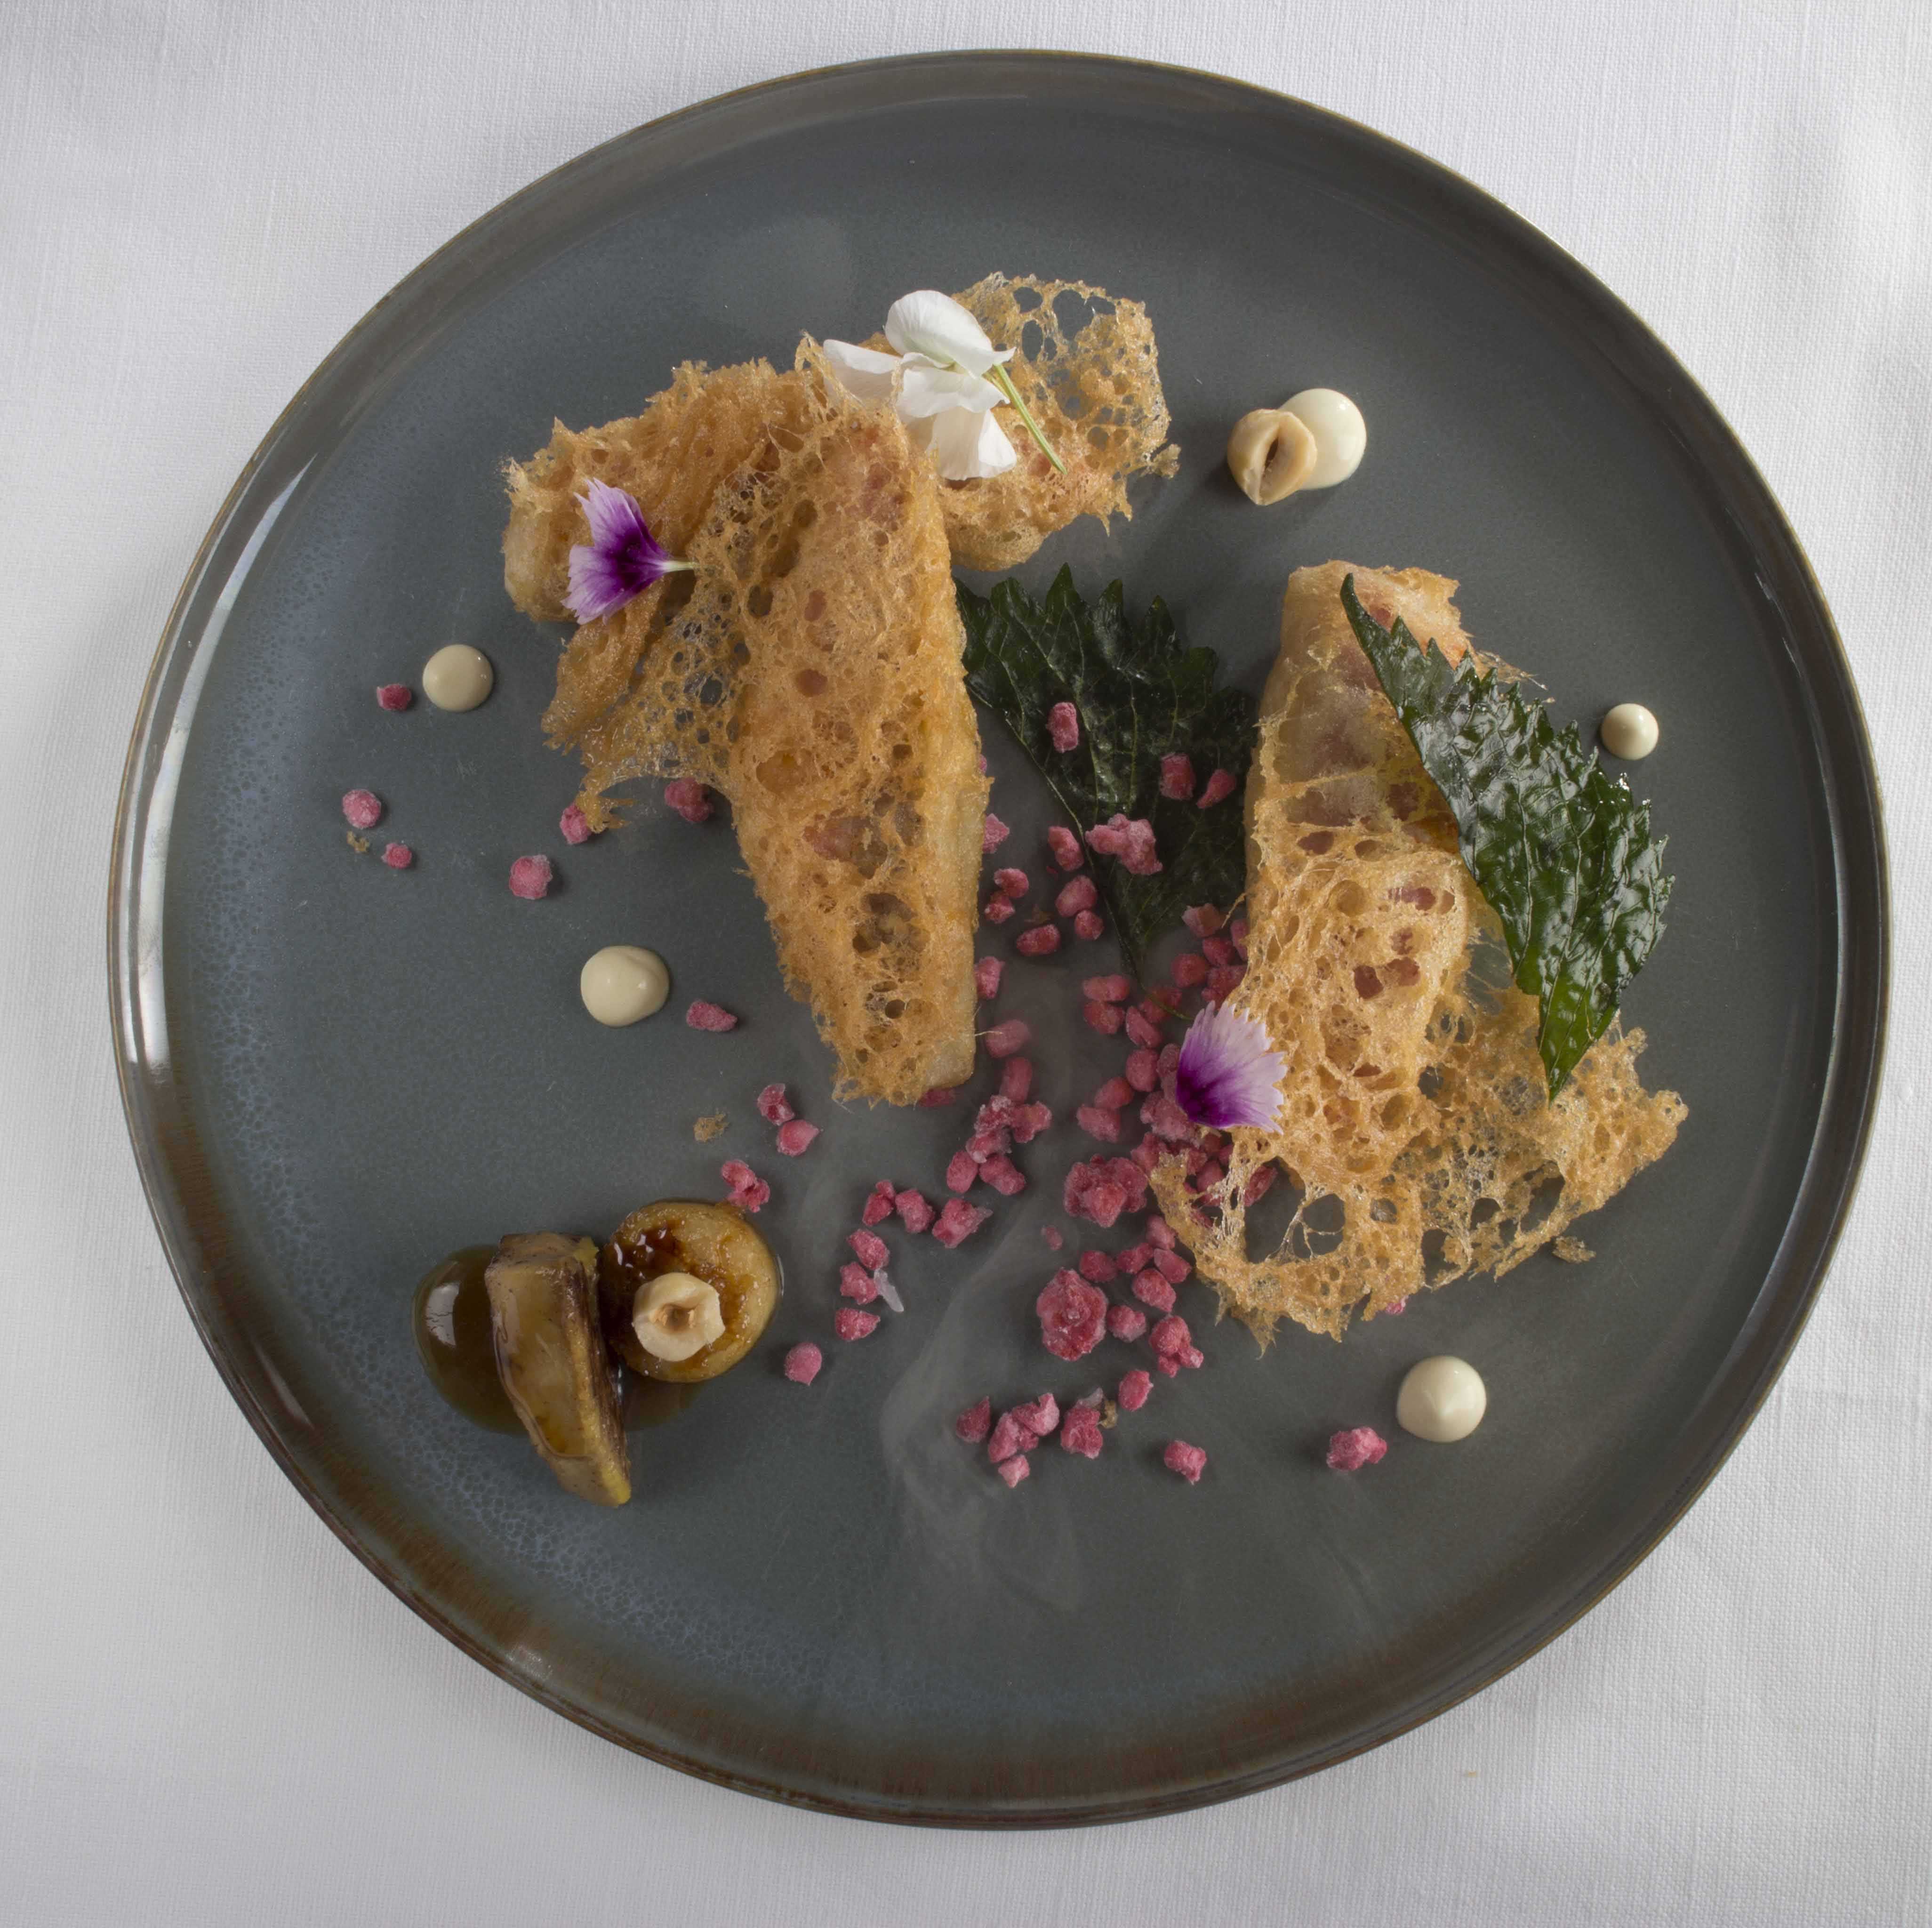 Triglia croccante con foie gras al Marsala, lamponi e nocciole